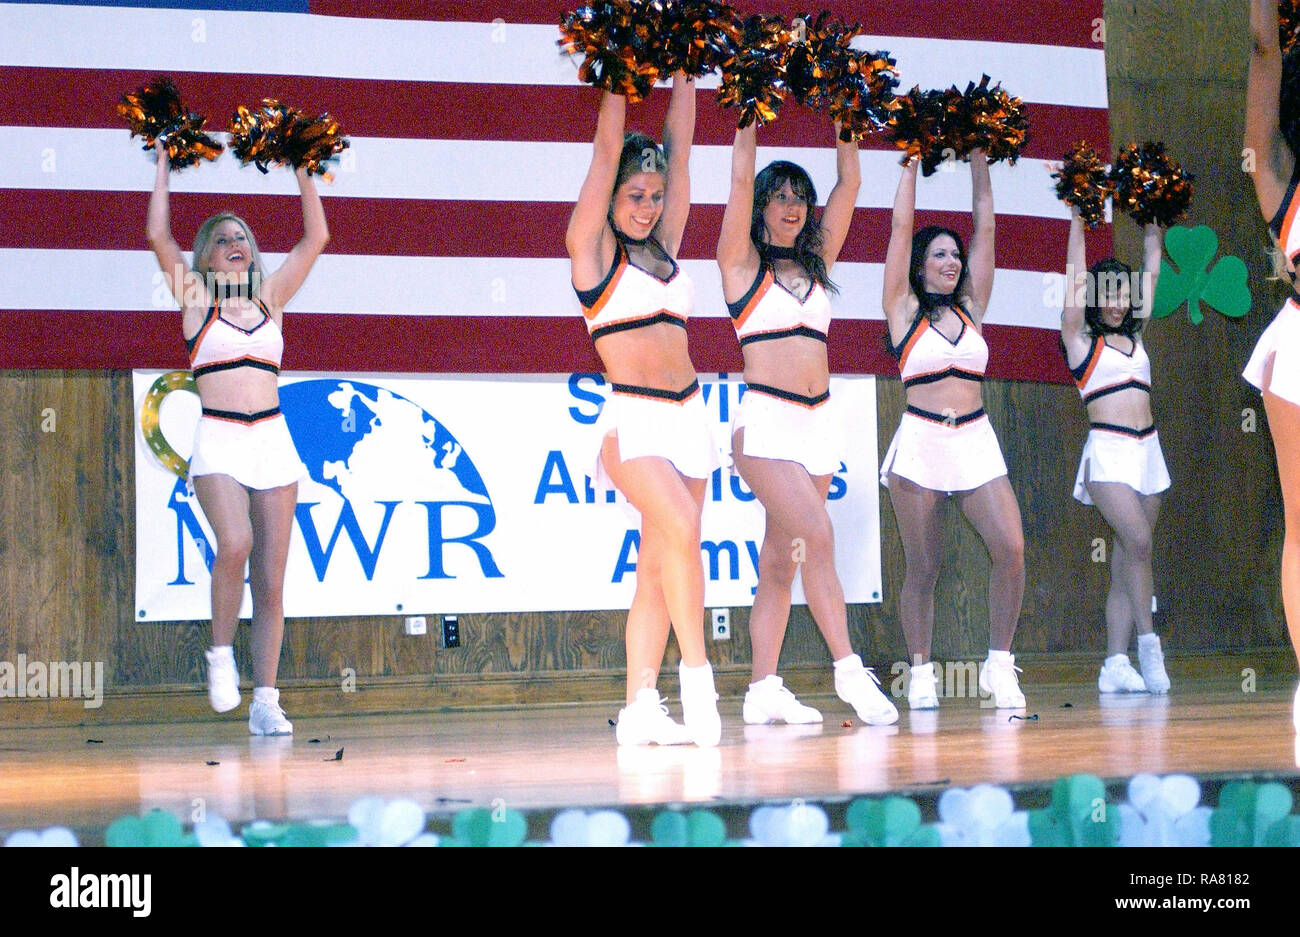 Cheerleader da National Football League (NFL) Cincinnati Bengals, la squadra di calcio di eseguire sul palco per la Organizzazione del Trattato del Nord Atlantico (NATO) personale militare e civile a Camp Butmir, Bosnia Erzegovina, durante l'operazione JOINT FORGE. Foto Stock